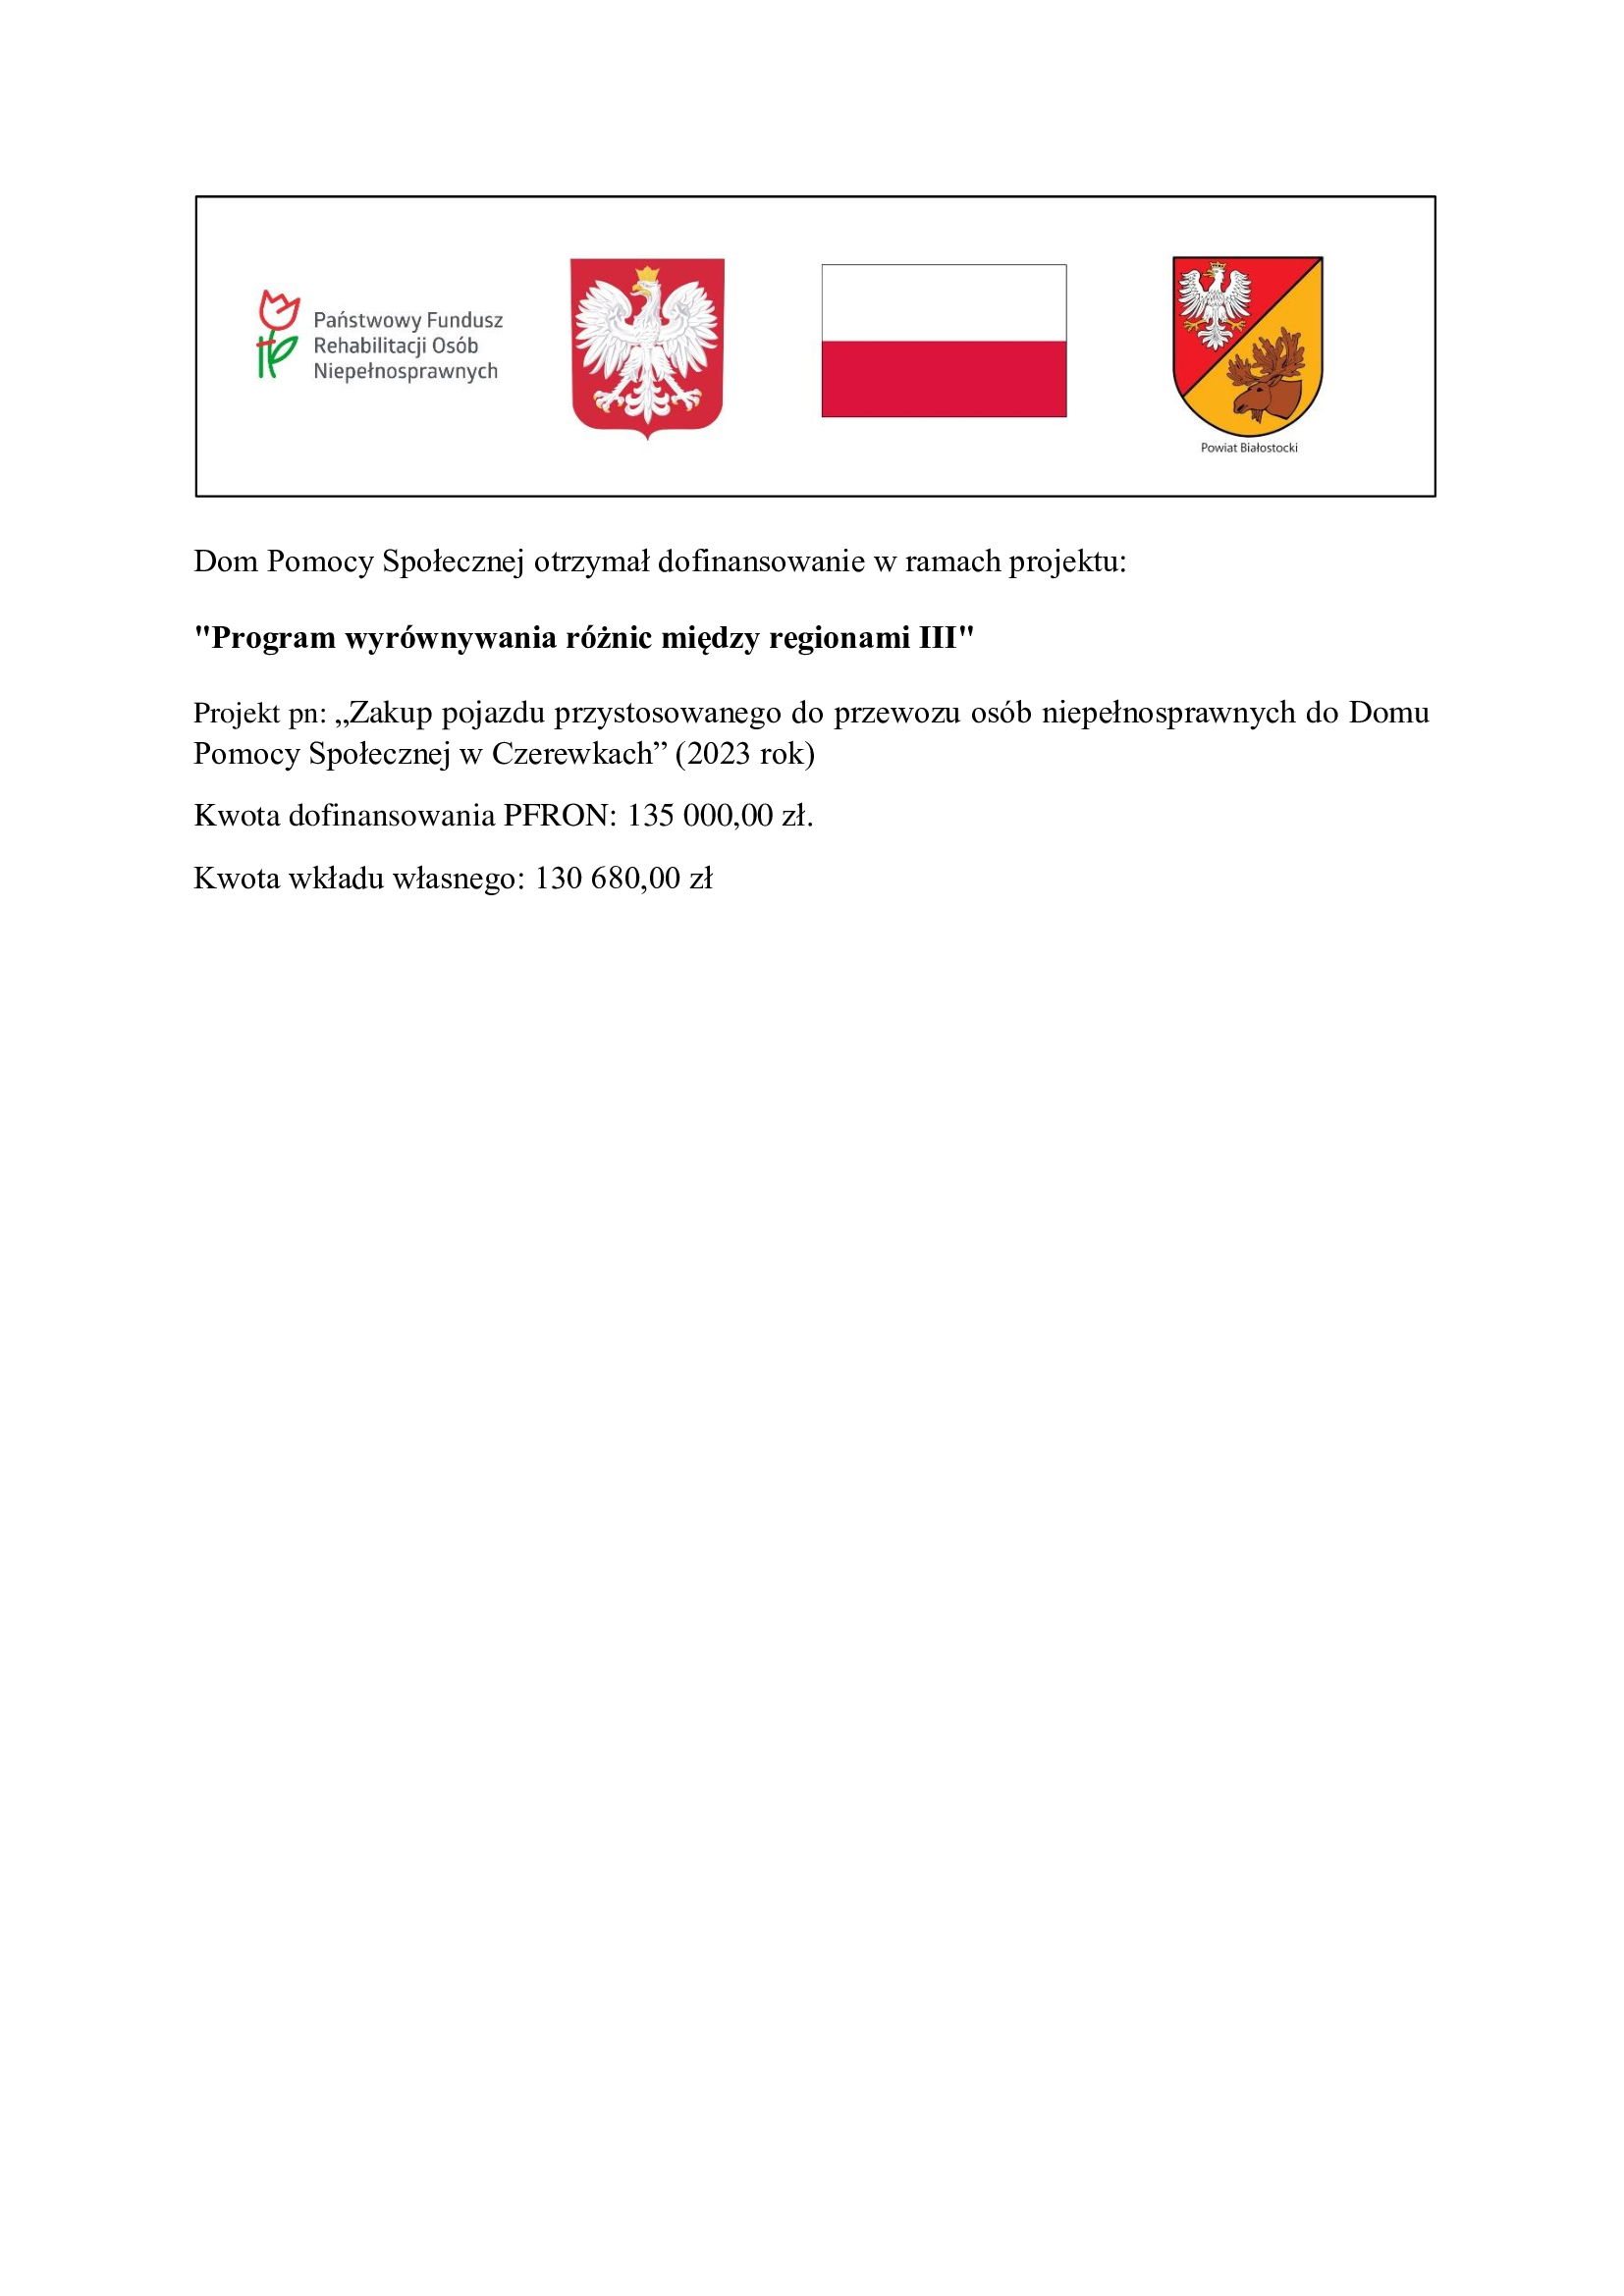 Zakup pojazdu przystosowanego do przewozu osb niepenosprawnych do Domu Pomocy Spoecznej w Czerewkach (2023 rok)